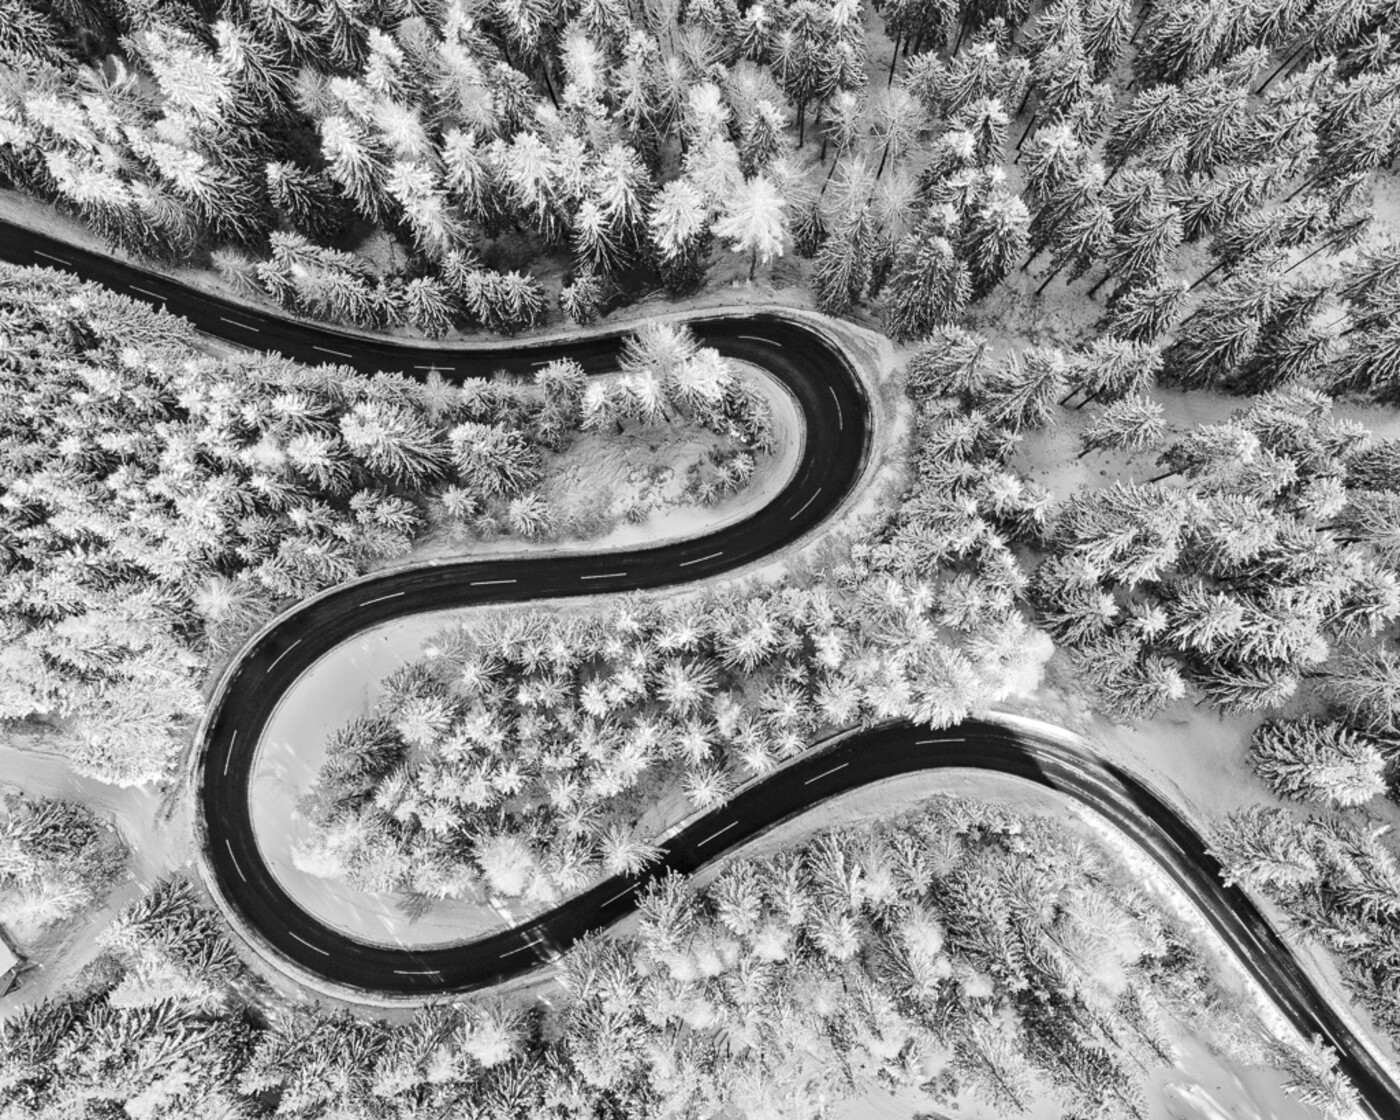 Финалист в категории Аэрофотография среди любителей, 2021. Извилистая горная дорога в зимней Австрии. Автор Гюнтер Райсснер